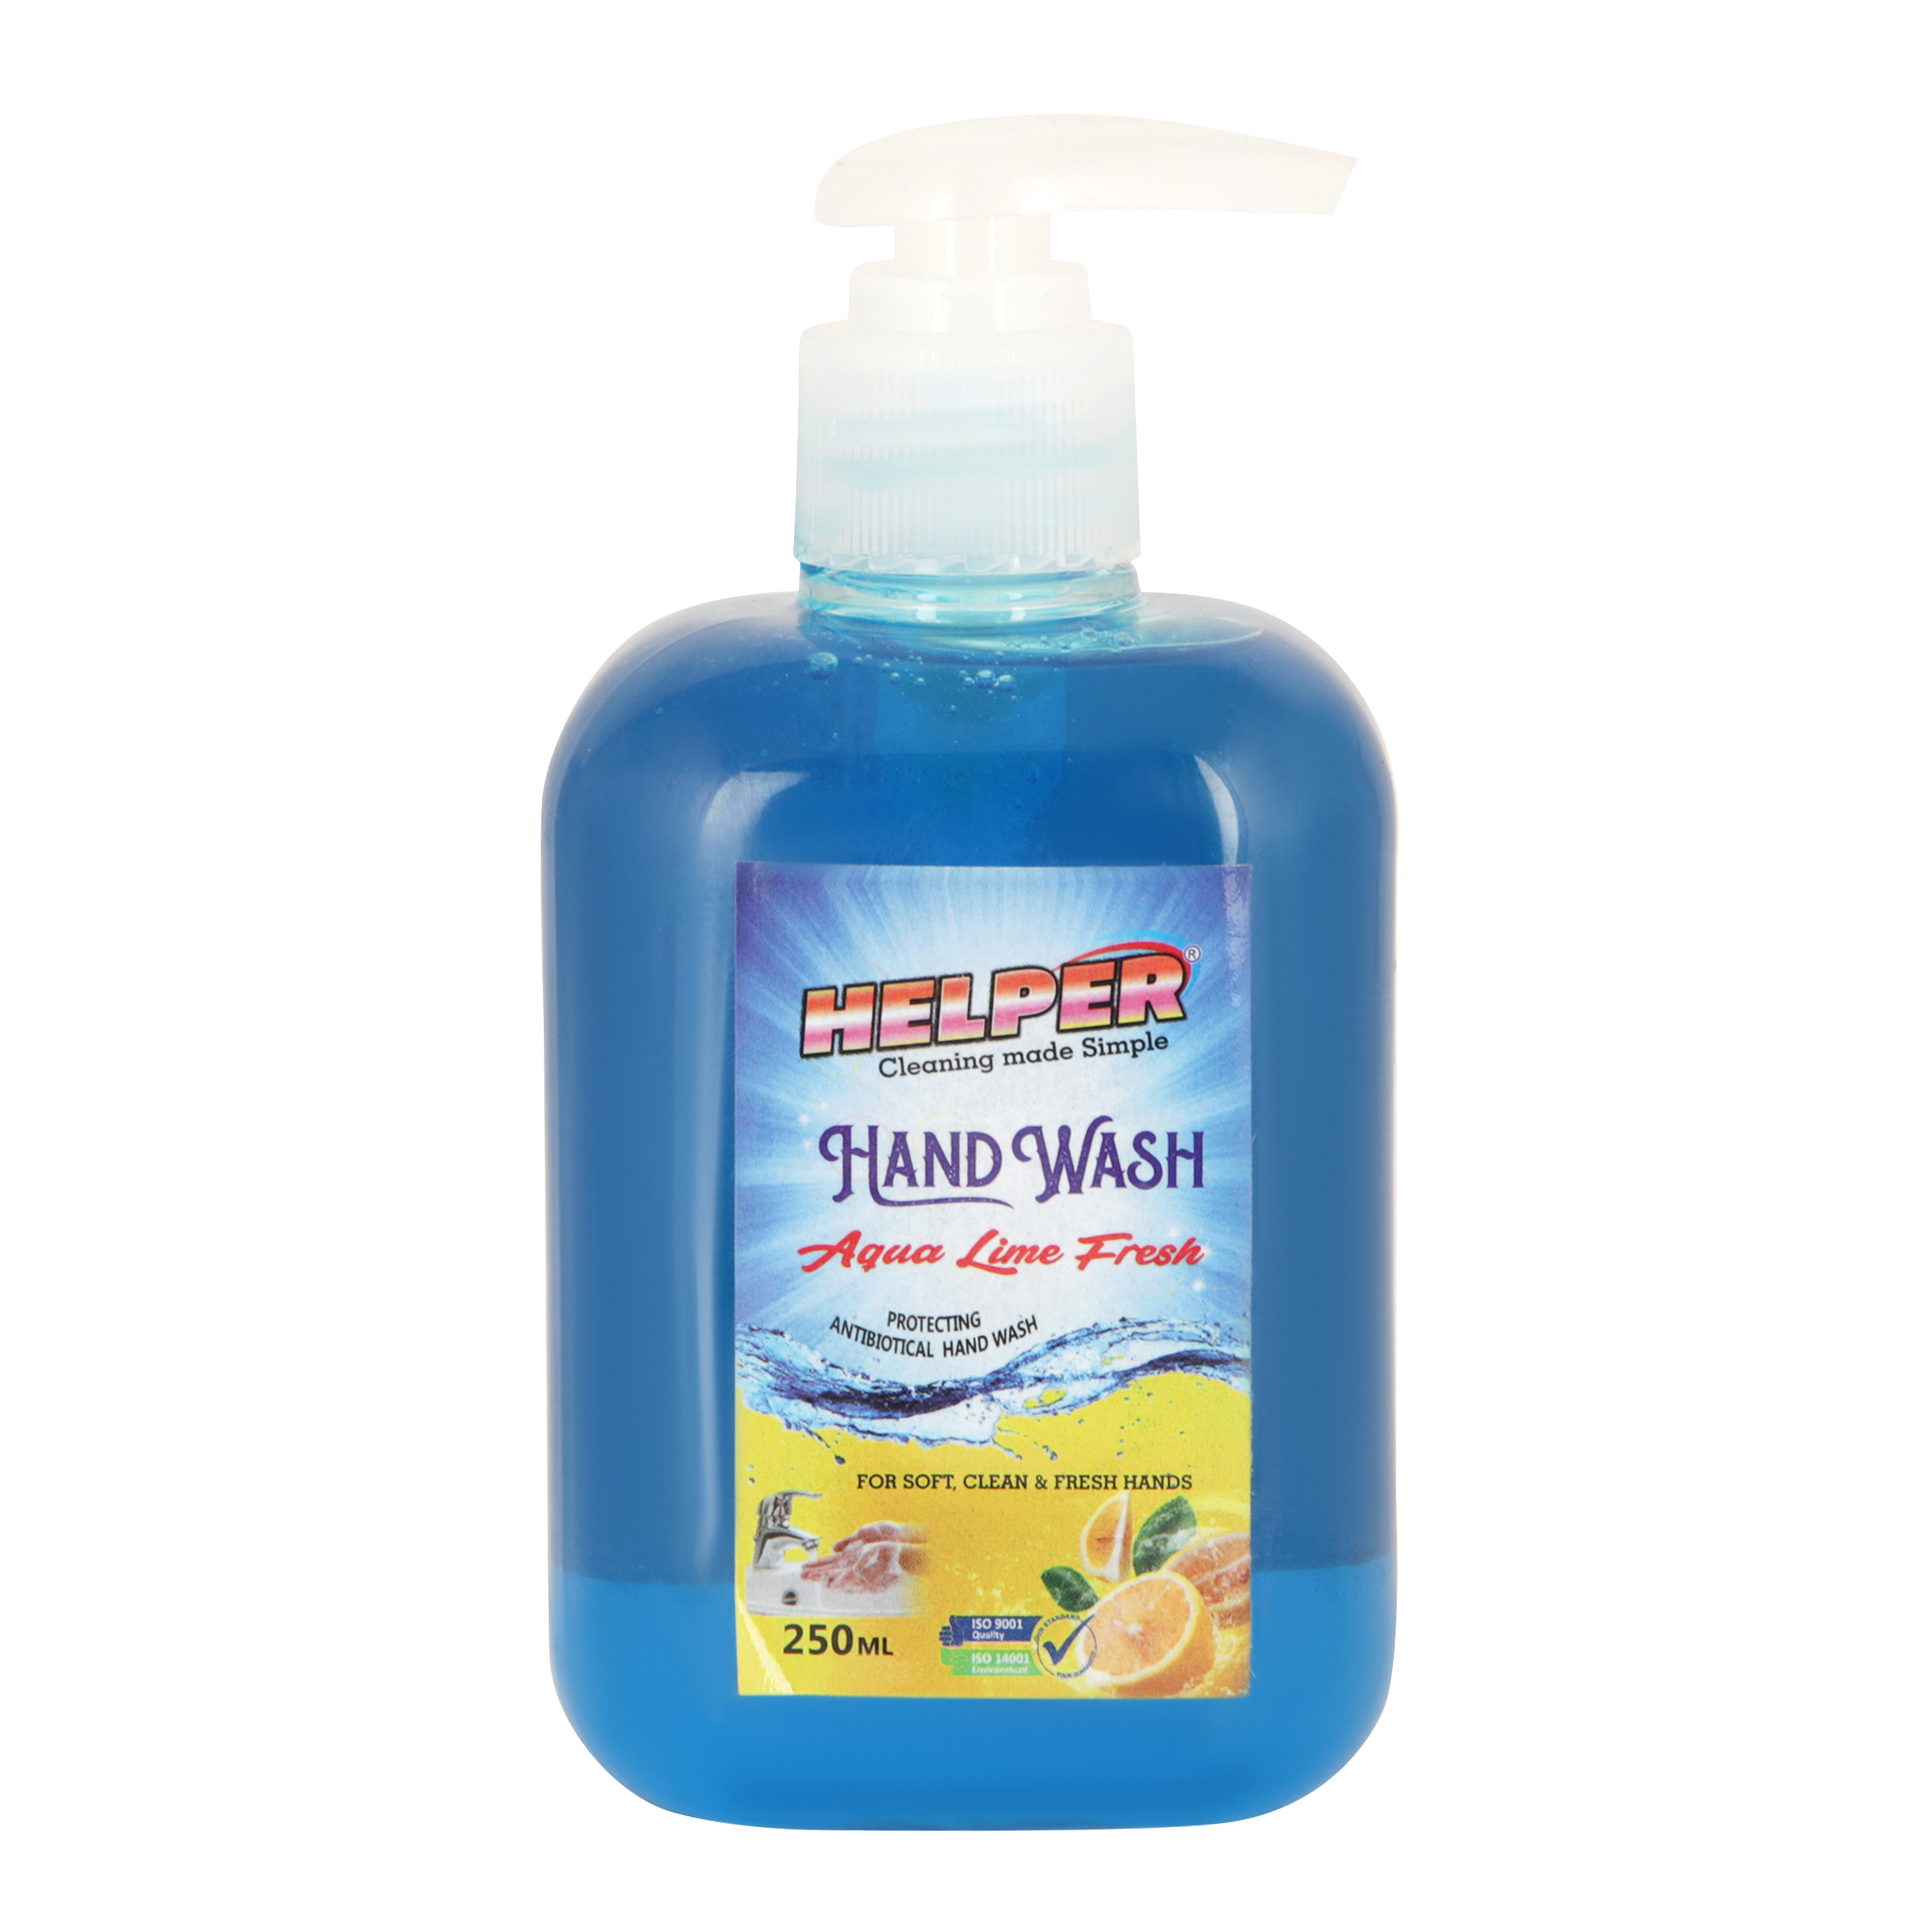 Helper Hand Wash Liquid With Pump, 250ml Bottle